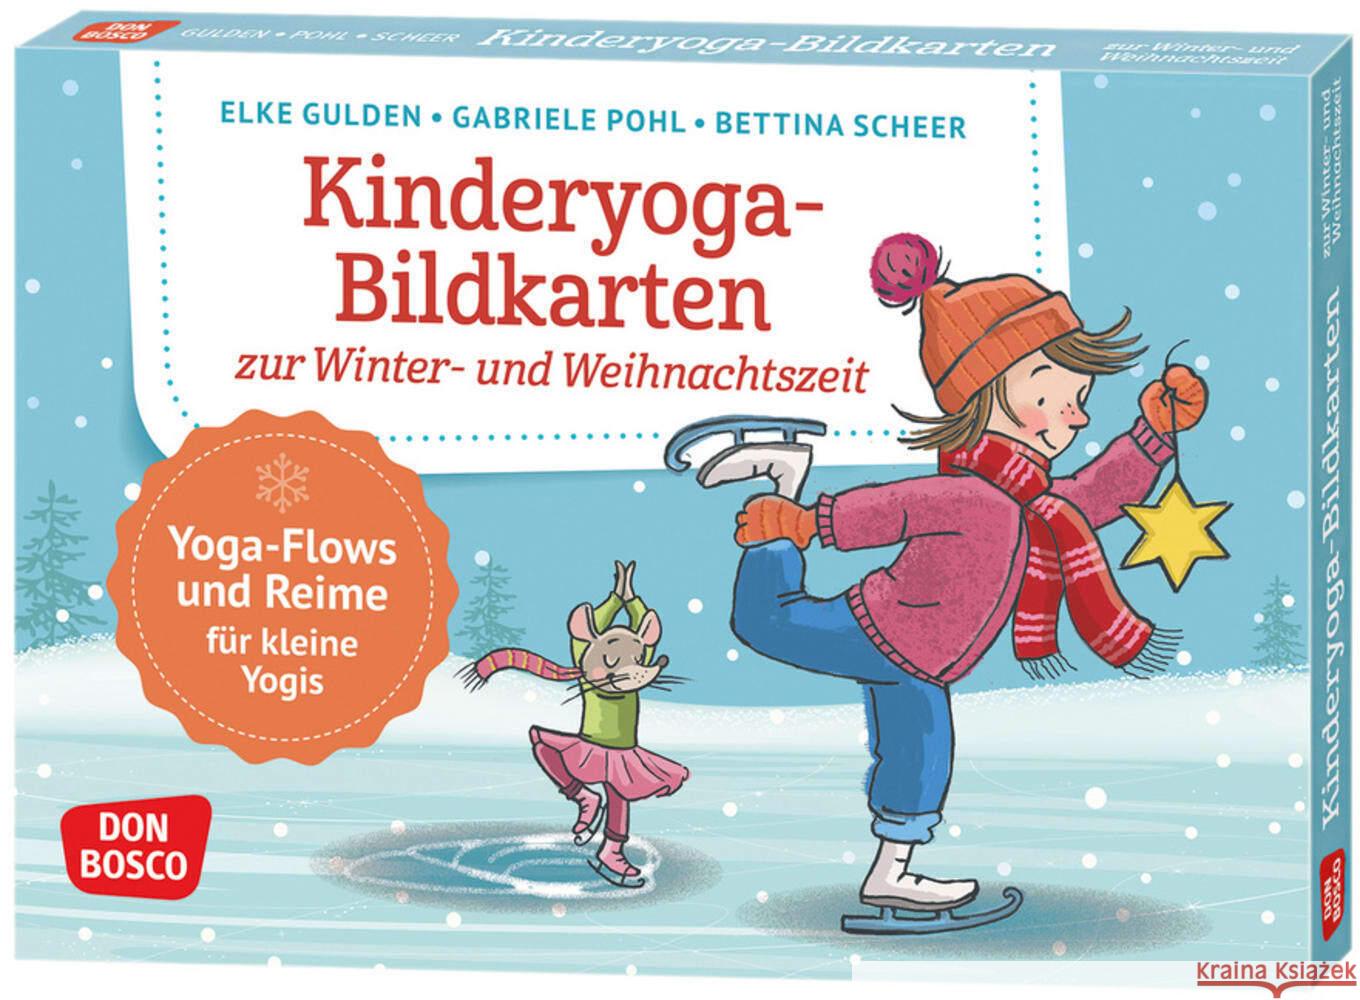 Kinderyoga-Bildkarten zur Winter- und Weihnachtszeit Gulden, Elke, Pohl, Gabriele, Scheer, Bettina 4260179516580 Don Bosco Medien